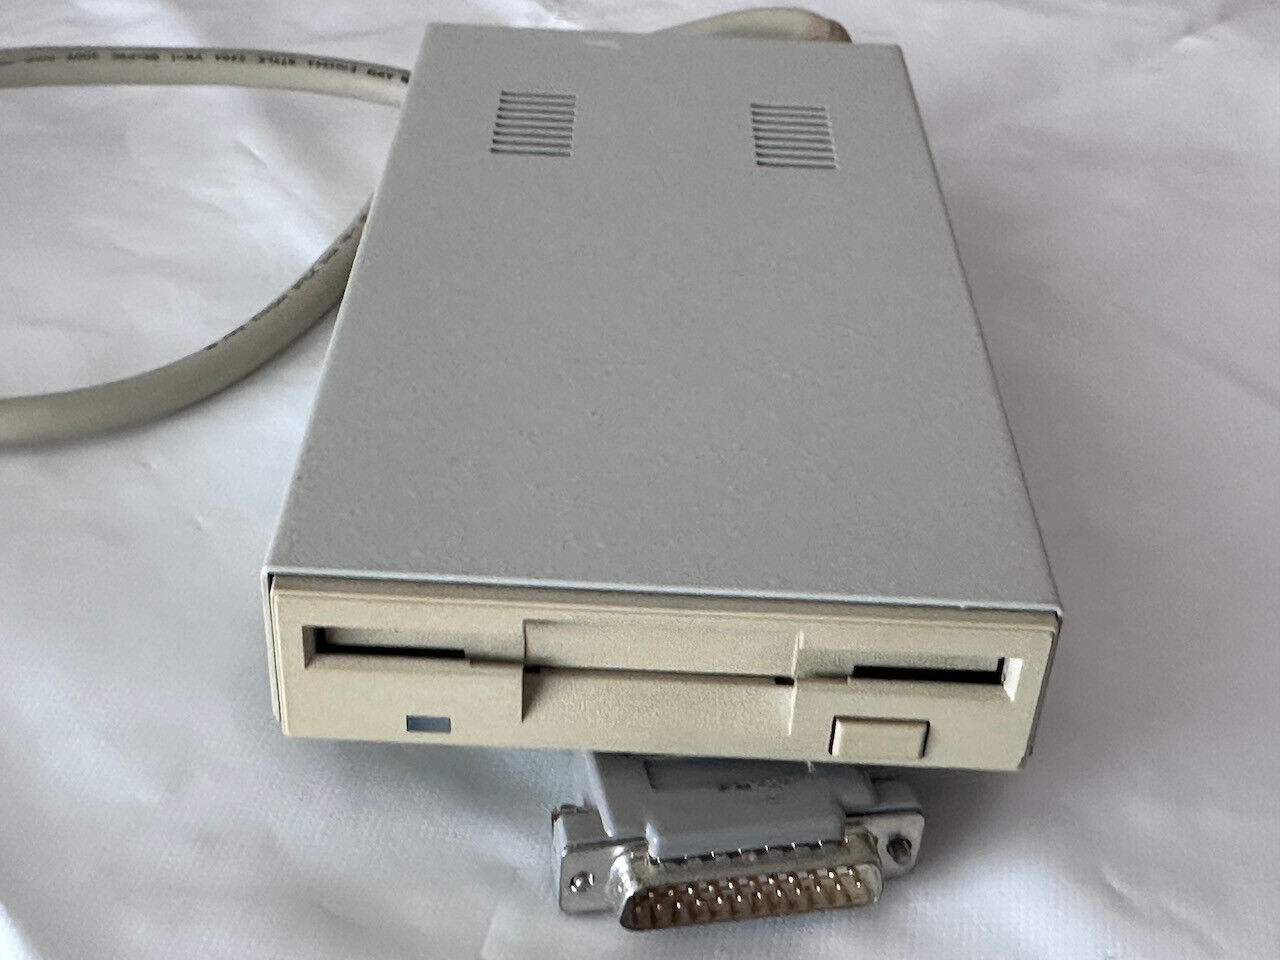 Amiga 500 - A4000 External Disk Drive, Amiga - Commodore #09 24